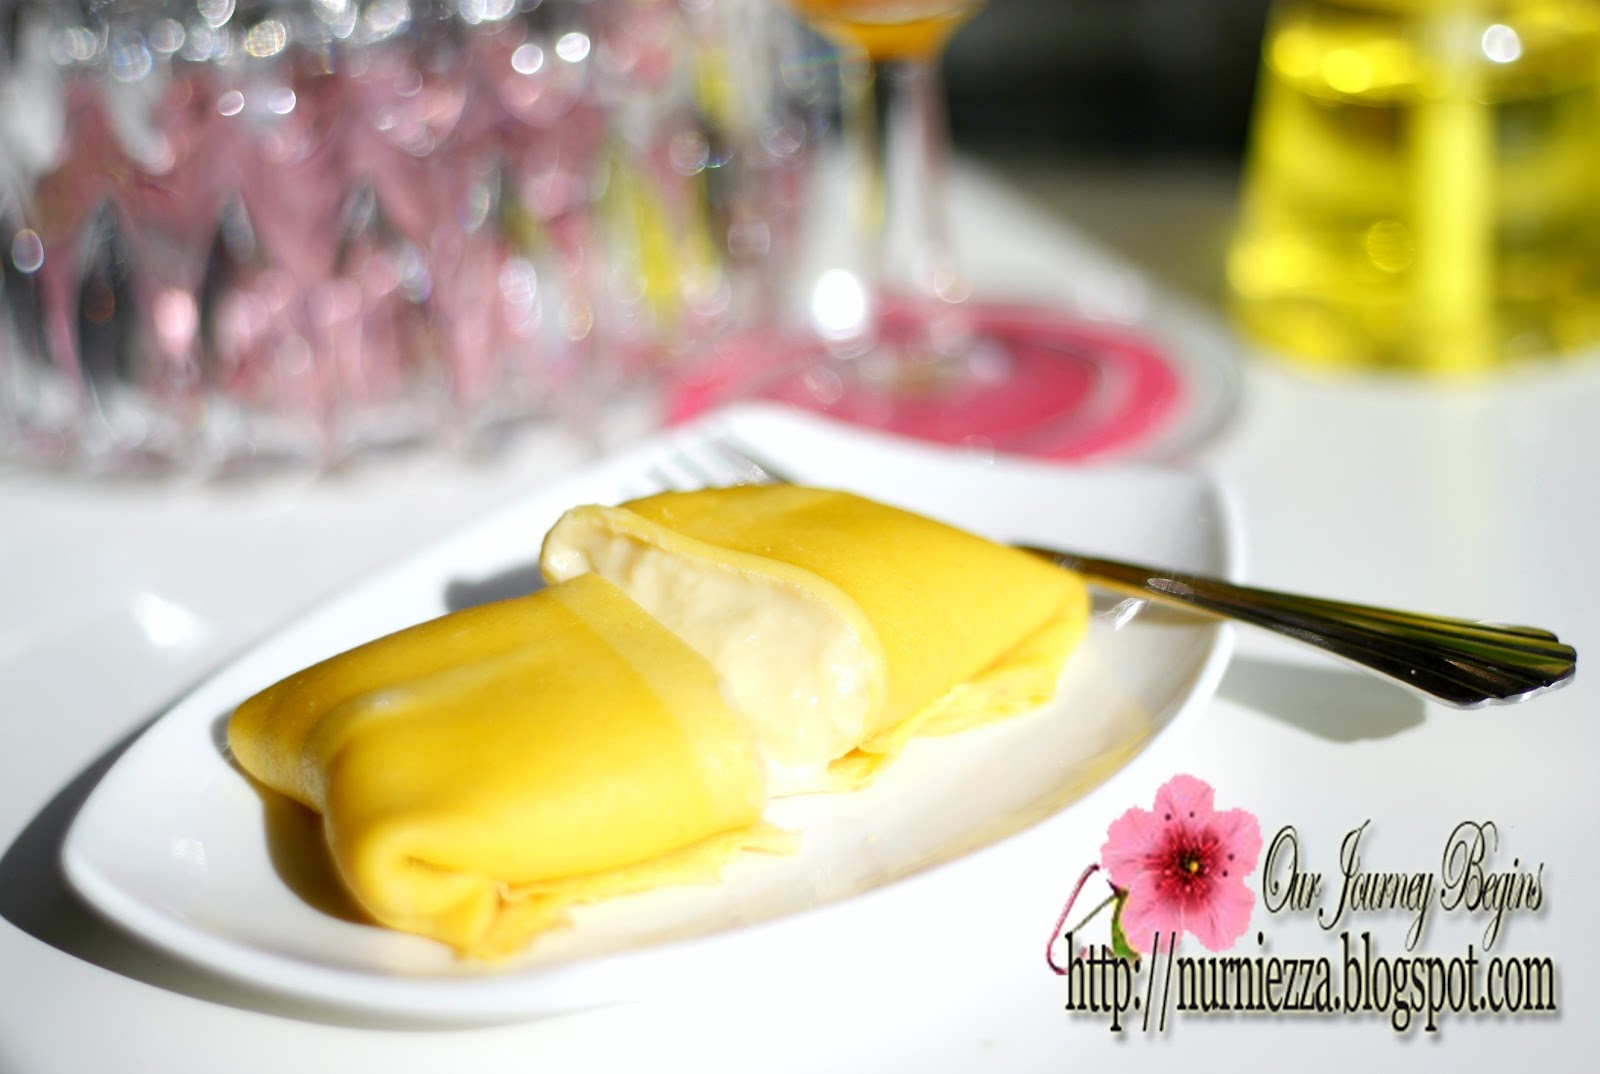 Our Journey Begins: Durian Pancake / Kuih Dadar Durian